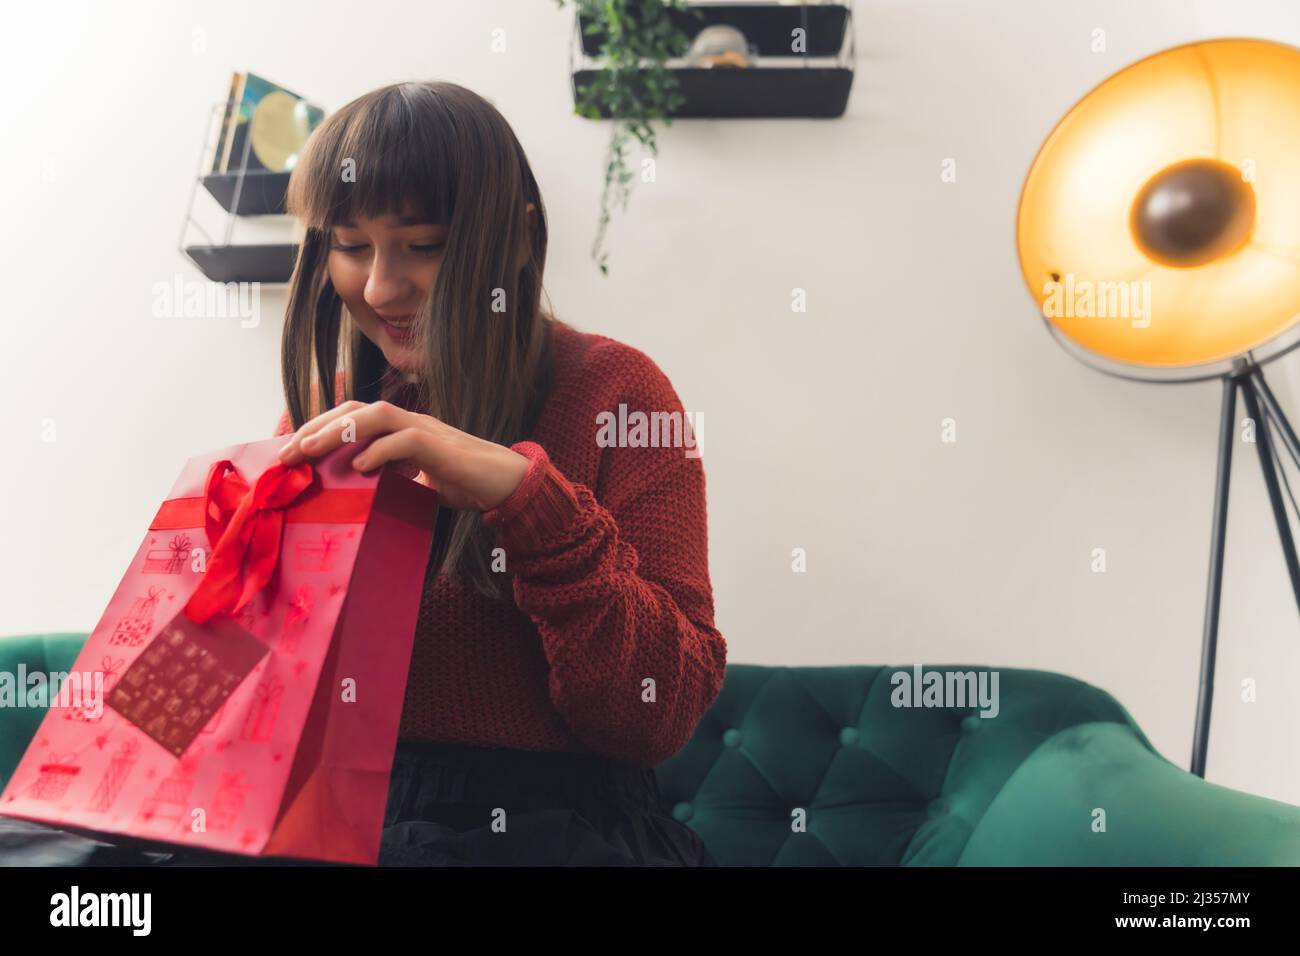 Alegre mujer caucásica en sus 20s o 30s abriendo un regalo mientras se sienta en un sofá verde. Disparo en interiores. Fotografías de alta calidad Foto de stock